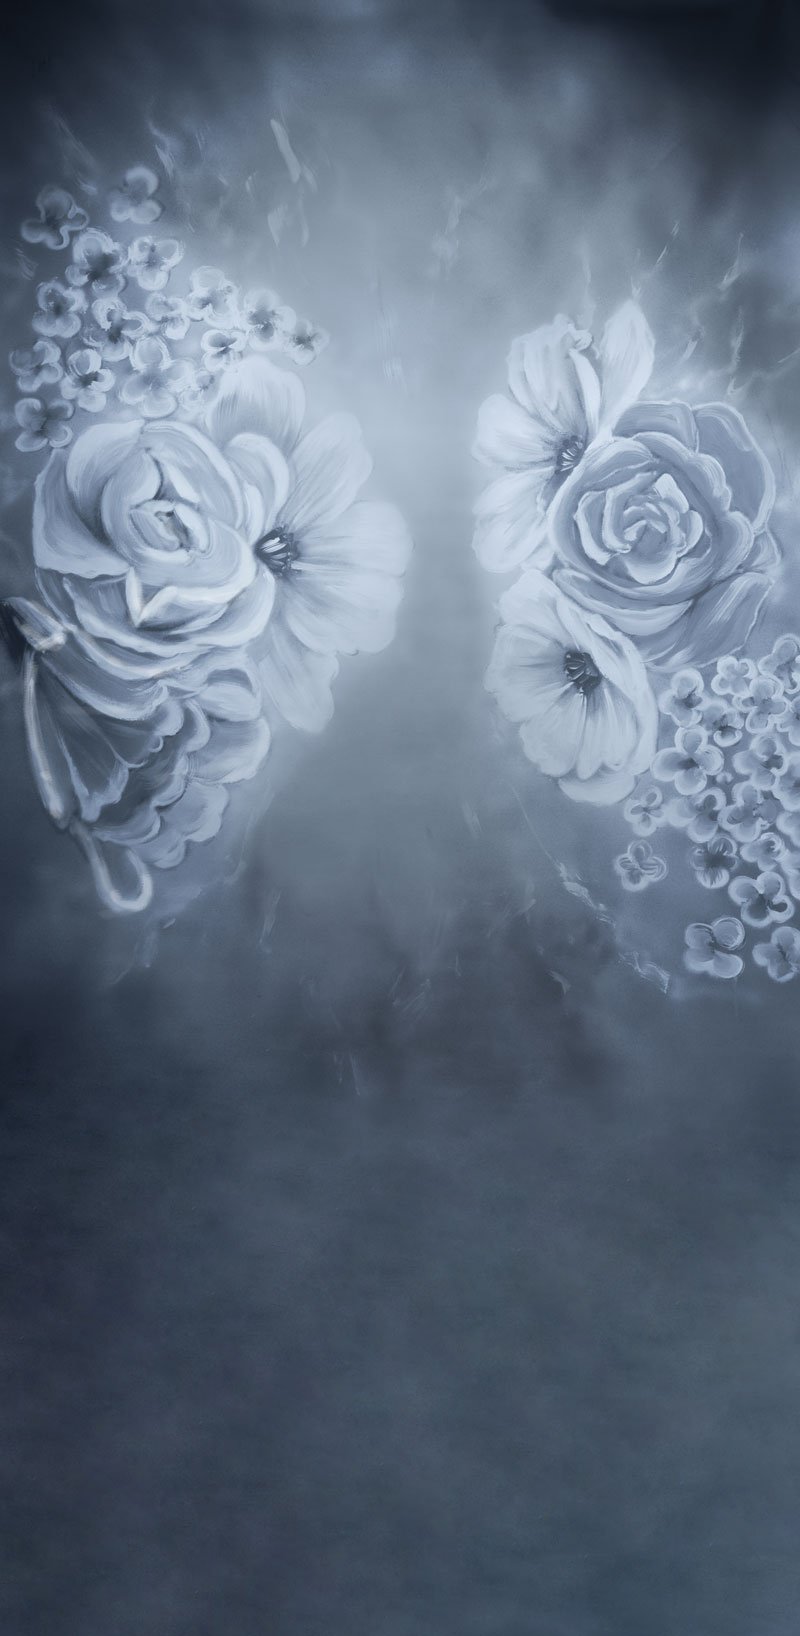 Kate Balayage la toile de fond florale grise pour la photographie